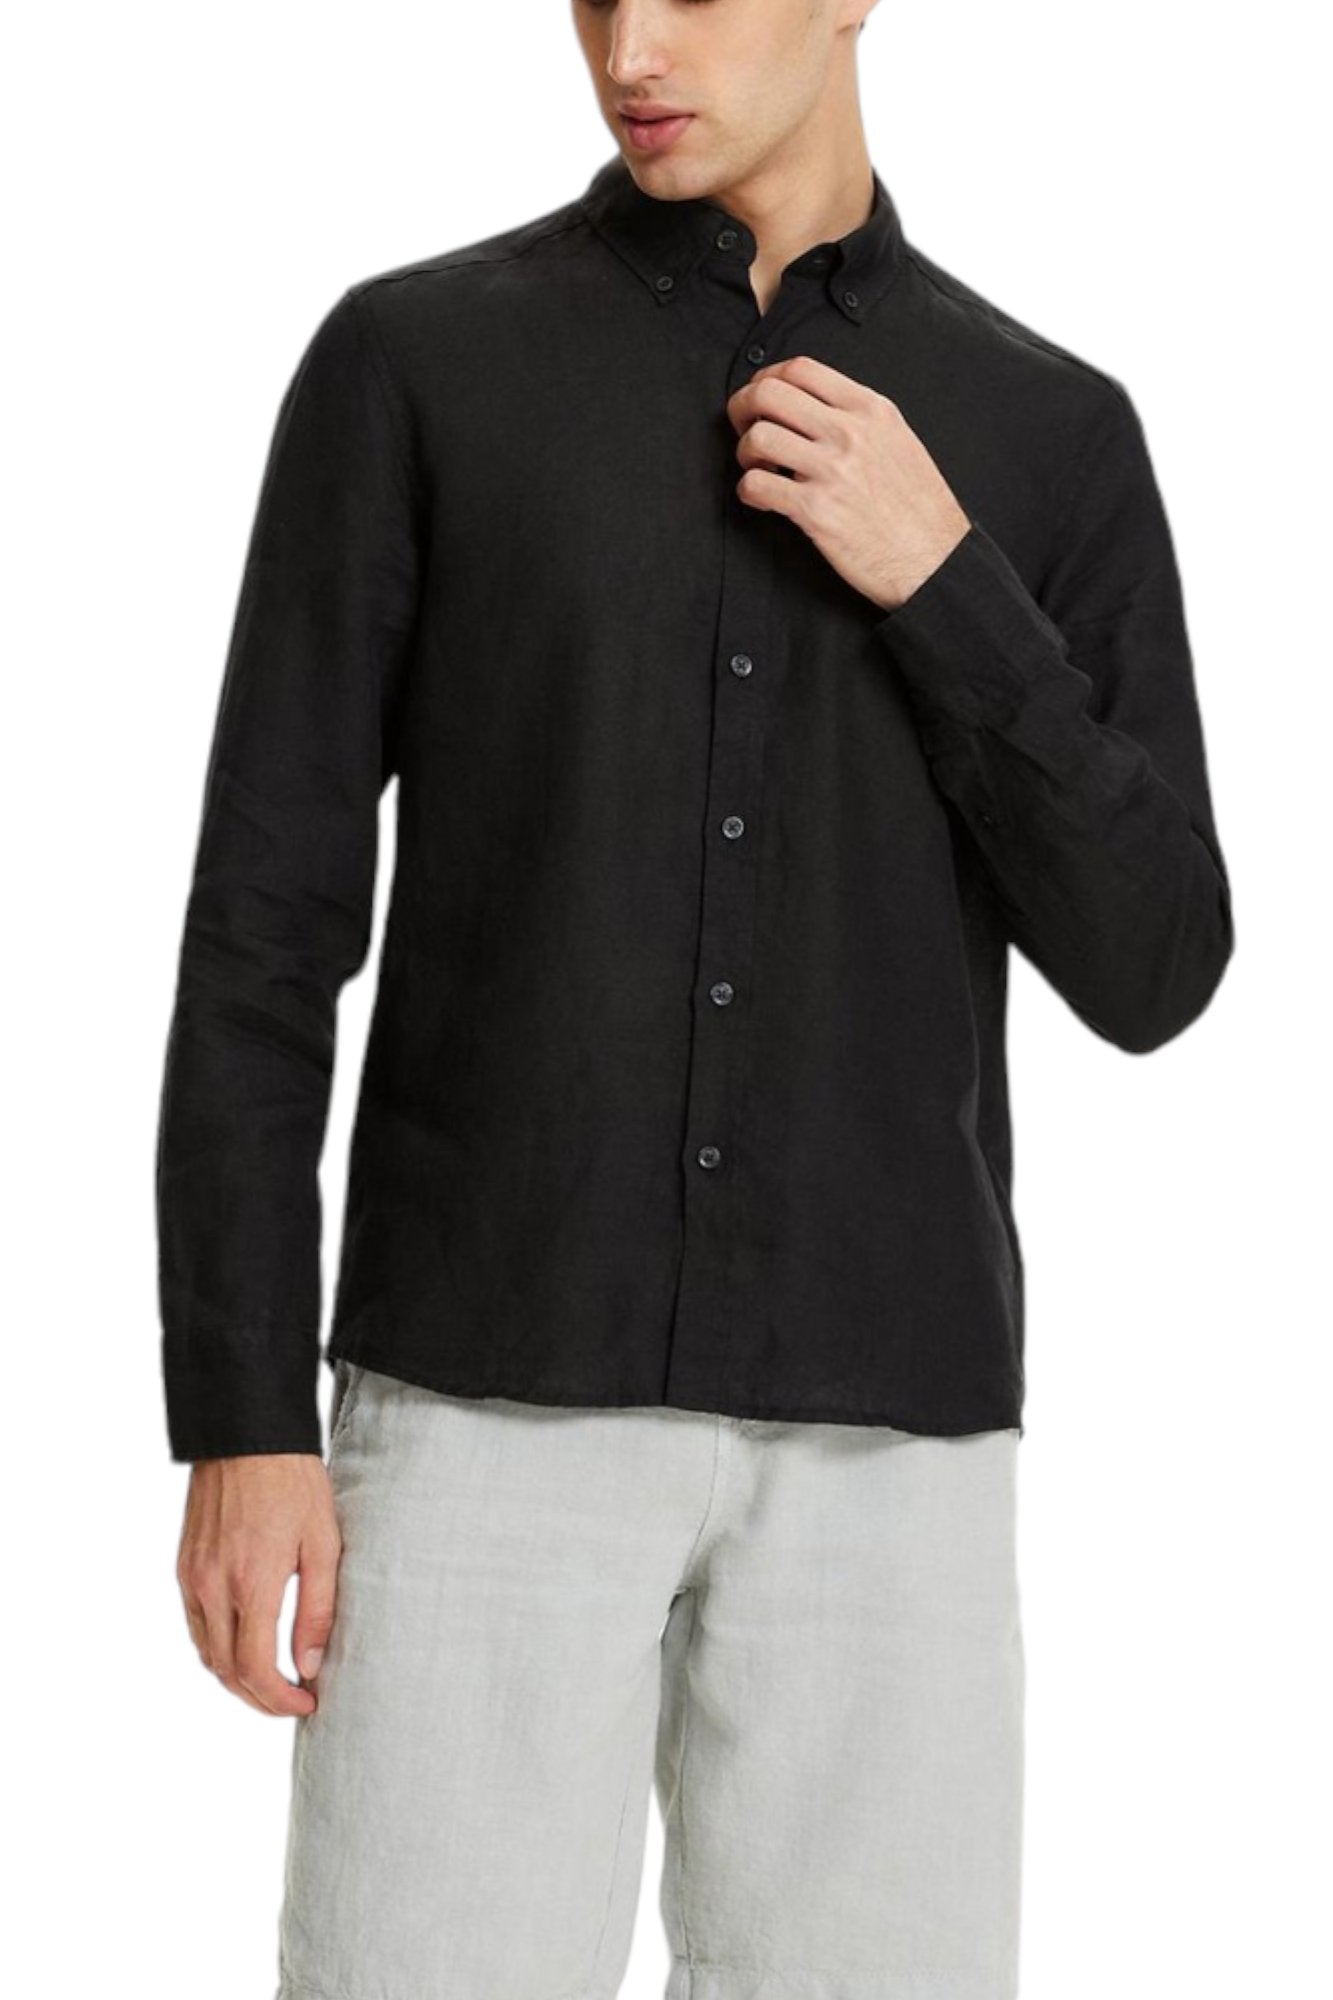 Classic Fit Linen Black Long Sleeve Shirt Shirt 99percenthandmade   